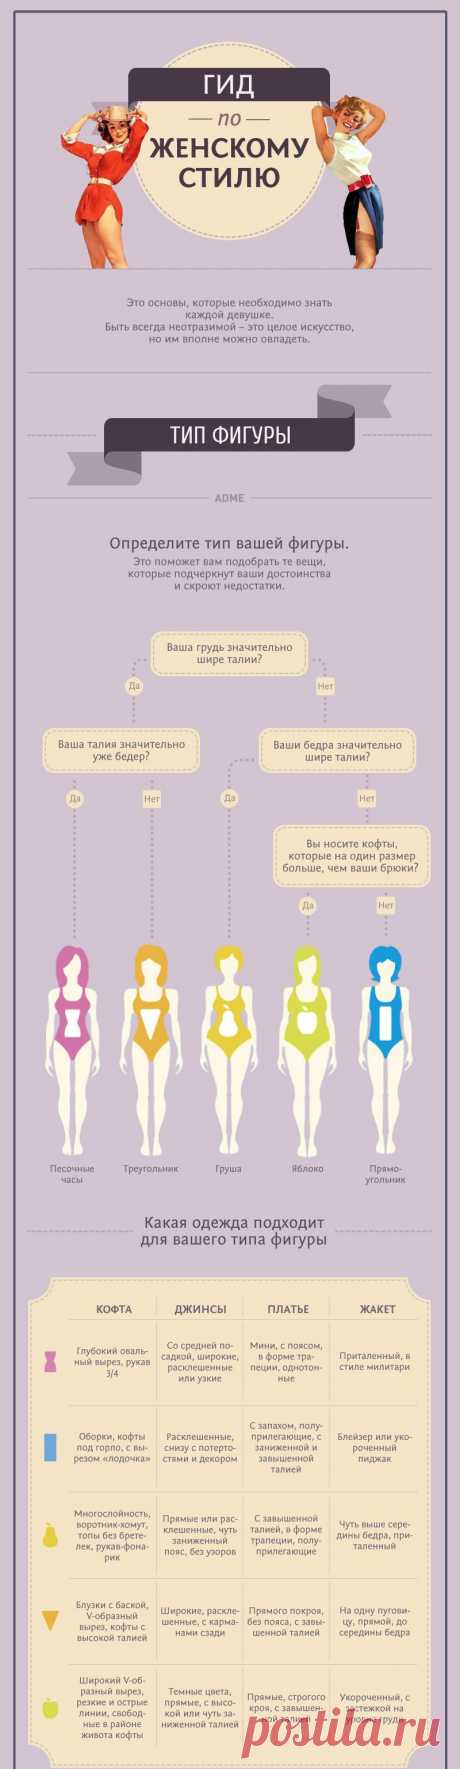 Инфографика в маркетинге
Самый полный гид по женскому стилю
AdMe.ru собрал в этой инфографике 25 самых дельных советов для девушек, которые хотят всегда выглядеть на отлично. Читайте, запоминайте и действуйте.